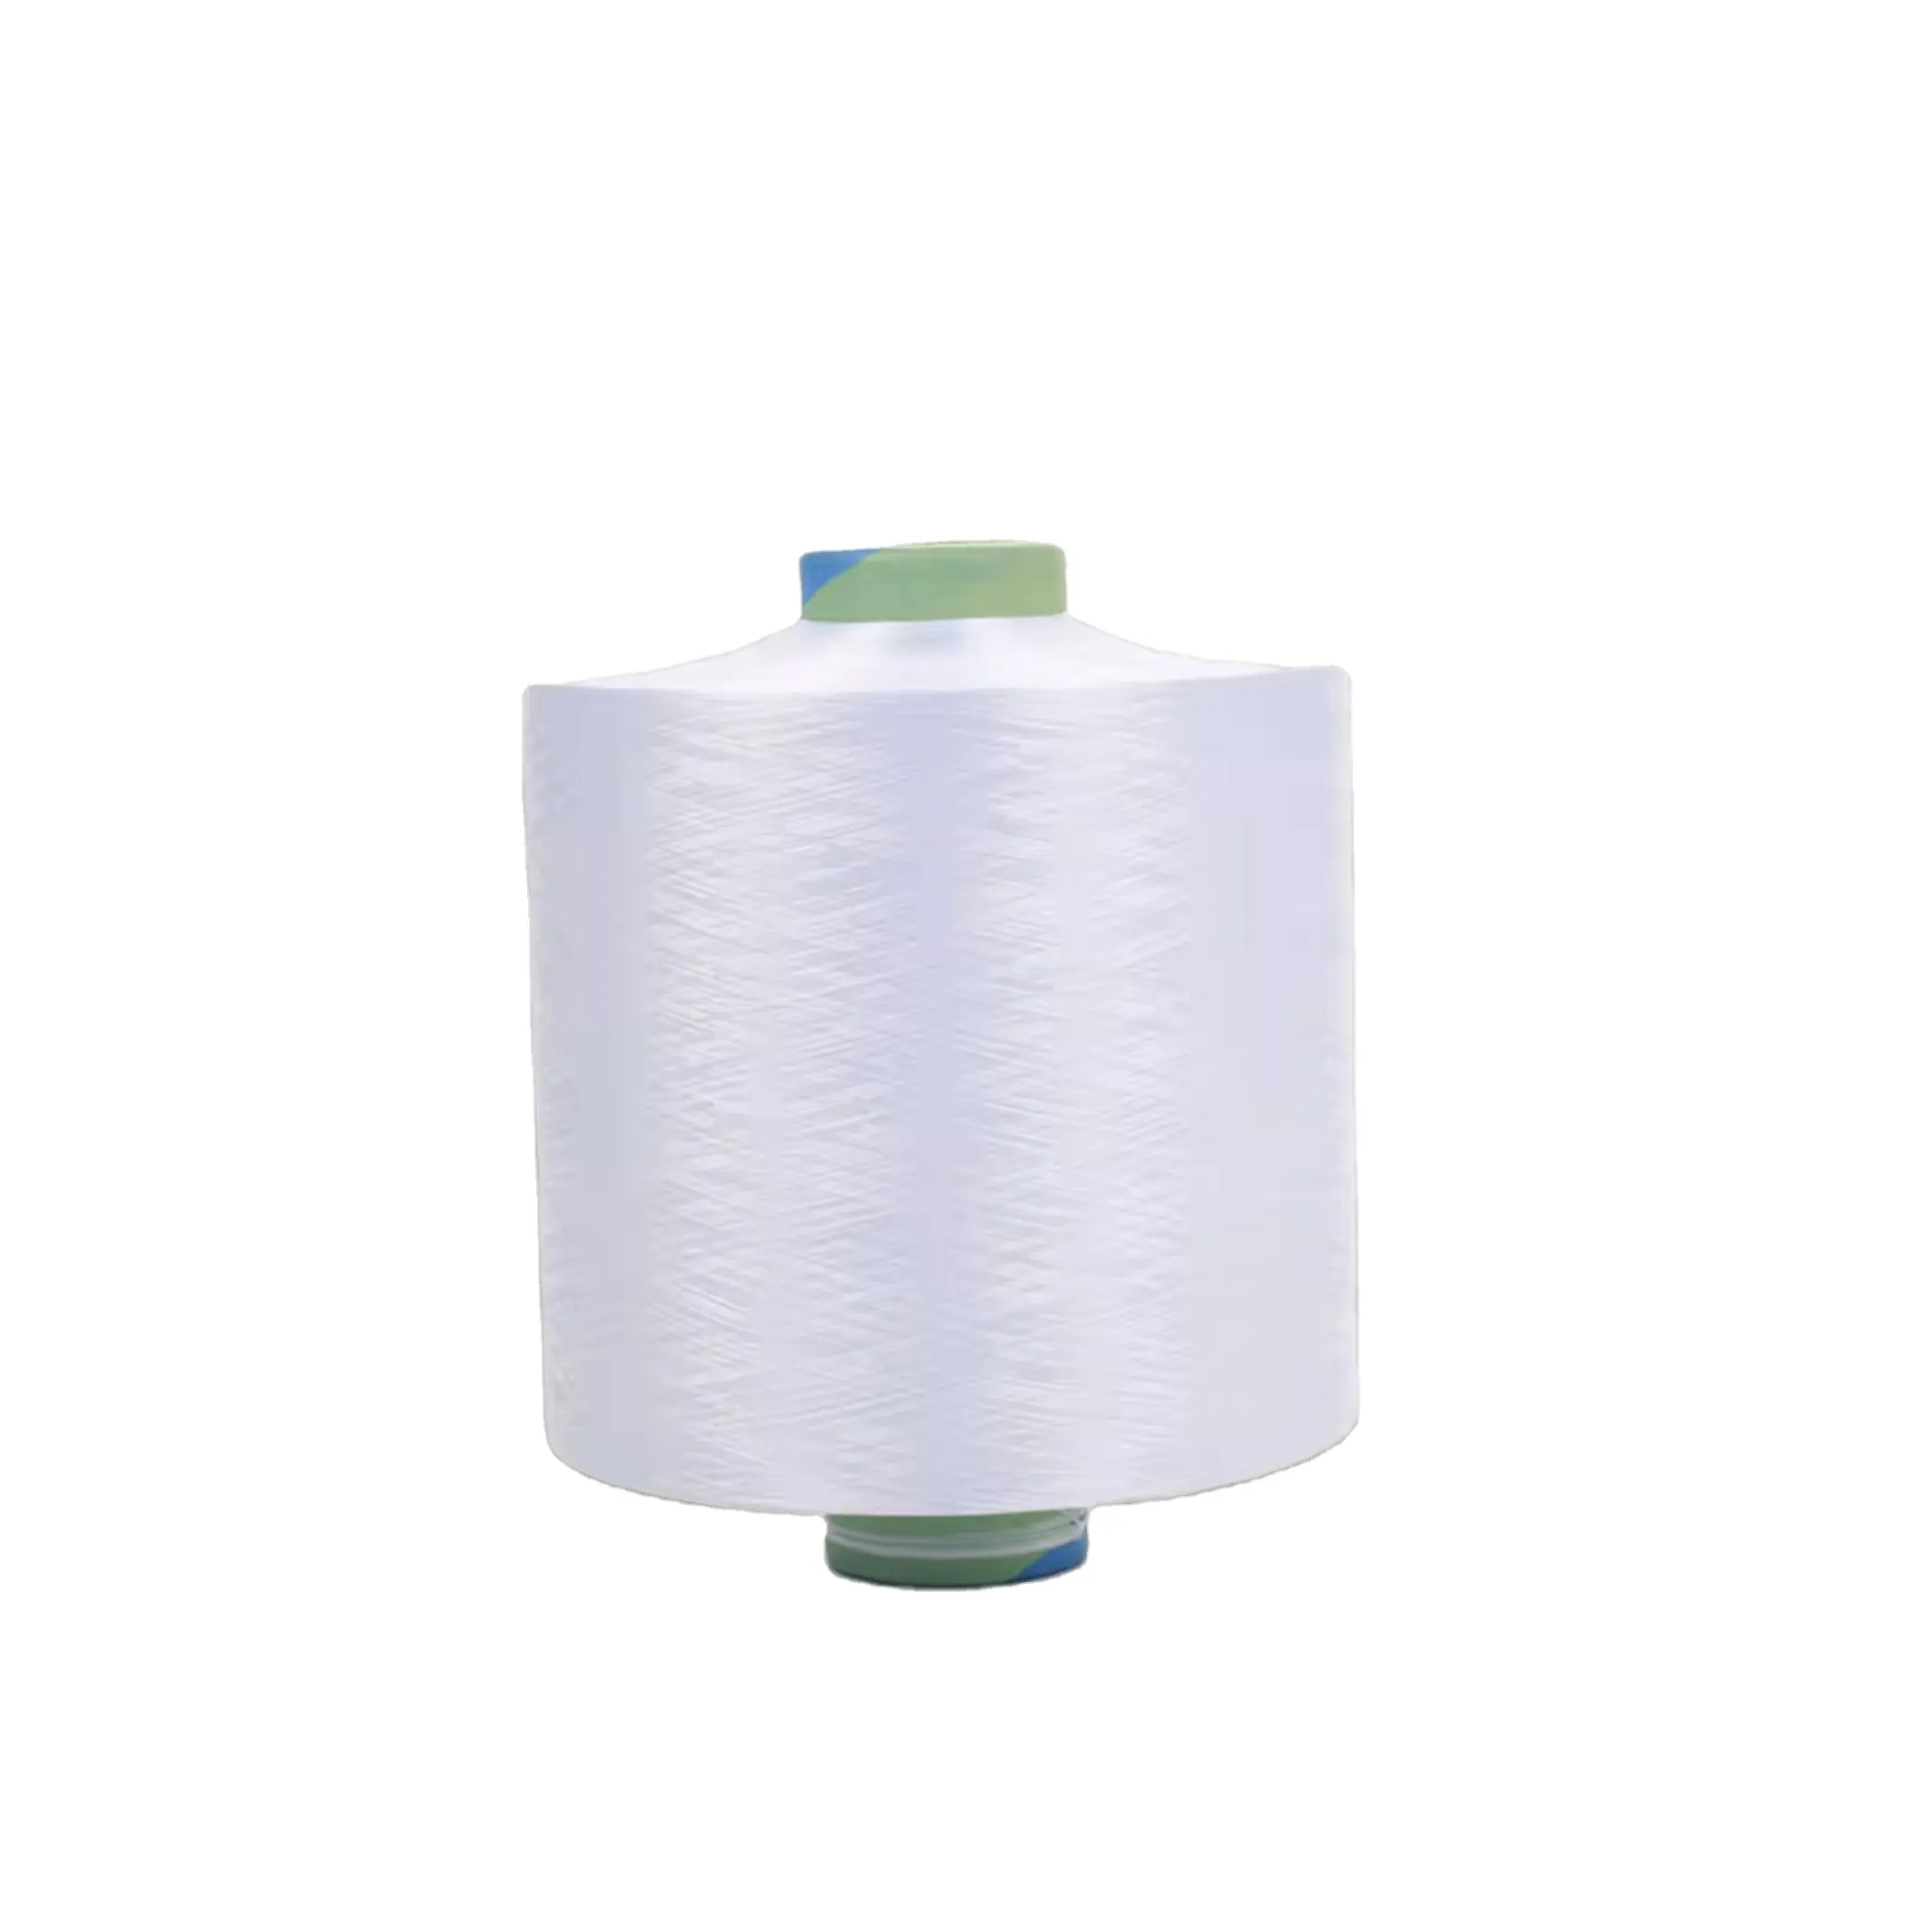 DTY 100% Polyester iplik 300/96 ham beyaz NIM Premium ürün tipi